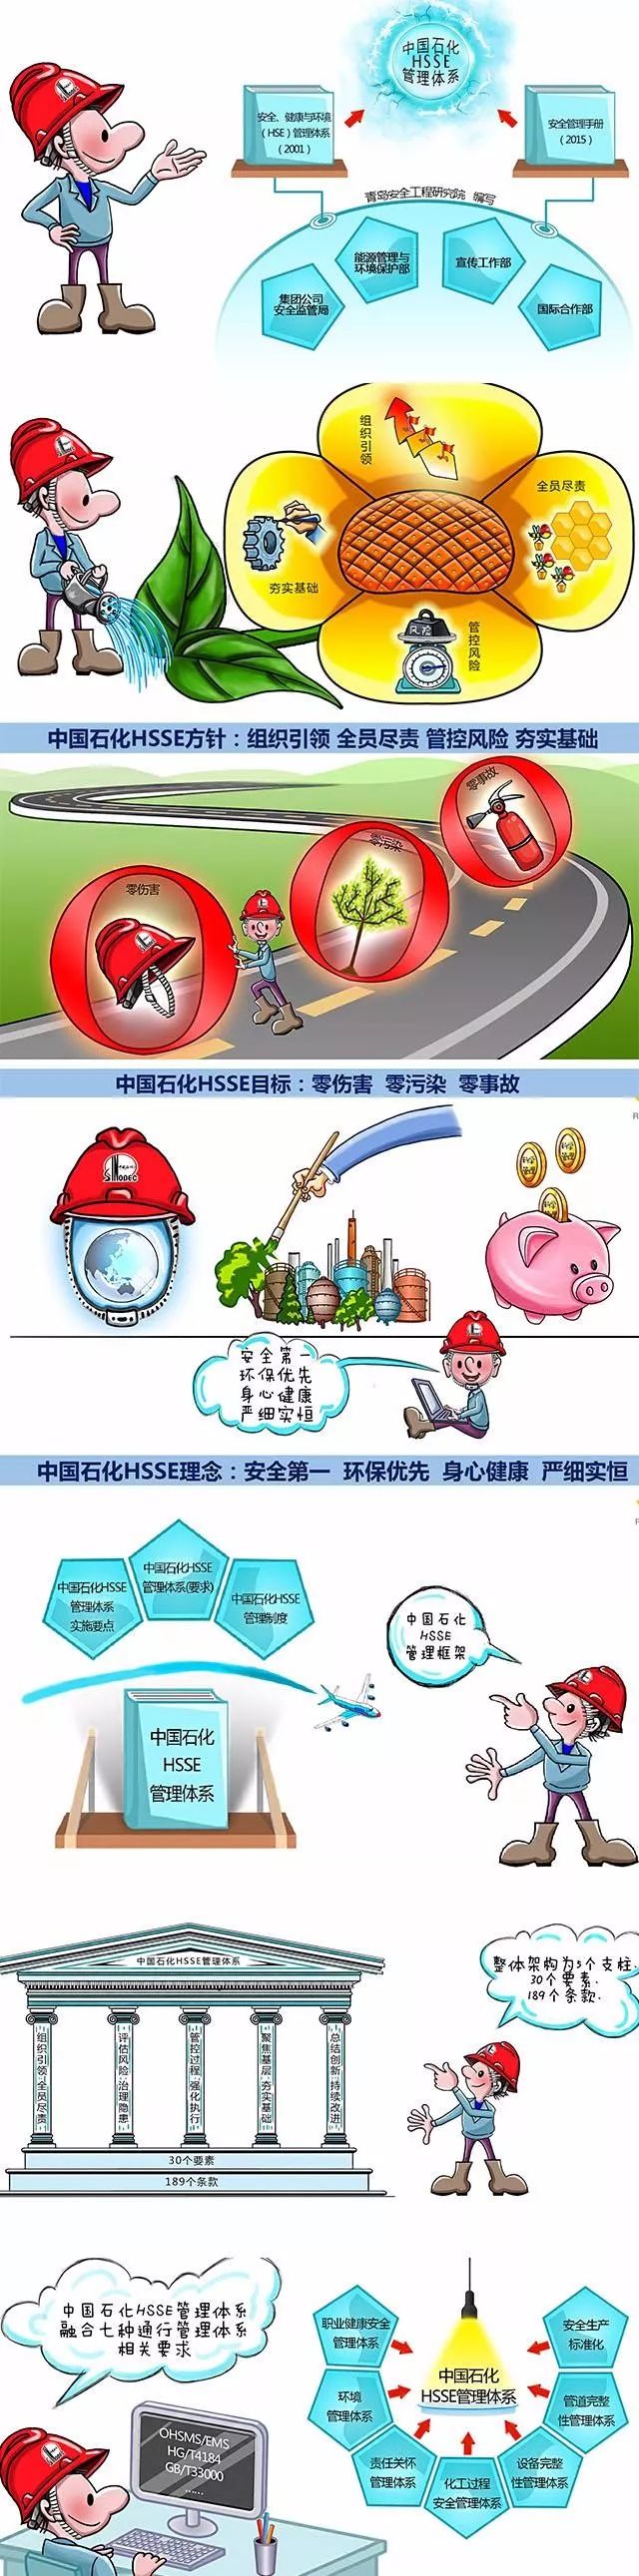 半岛体育app图说安全漫画解读《中国石化HSSE管理体系》之一(图4)